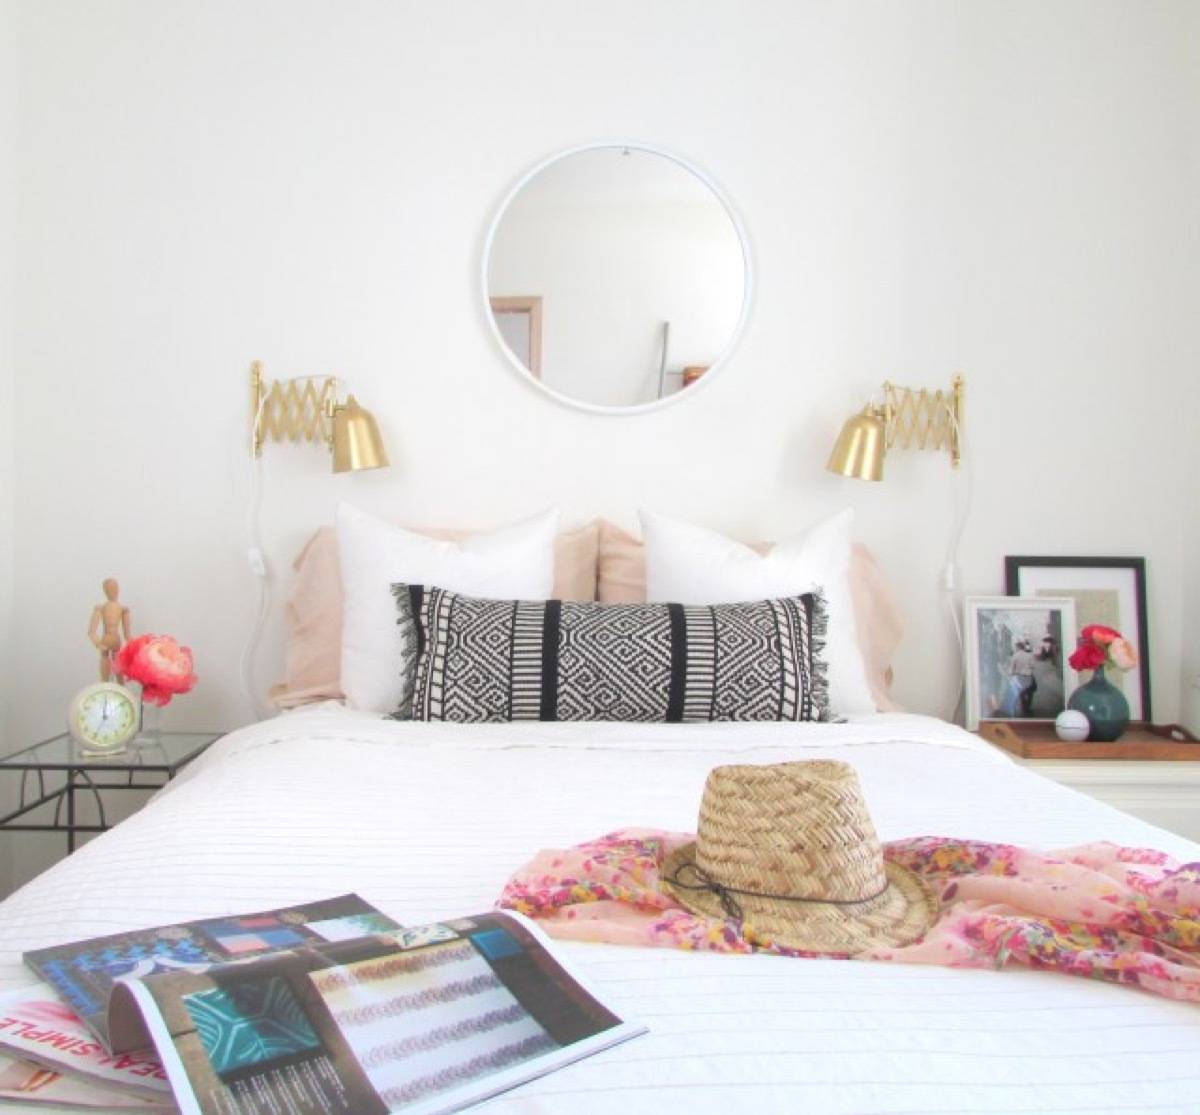 99 ways to use fabric to decorate your home | DIY lumbar pillow